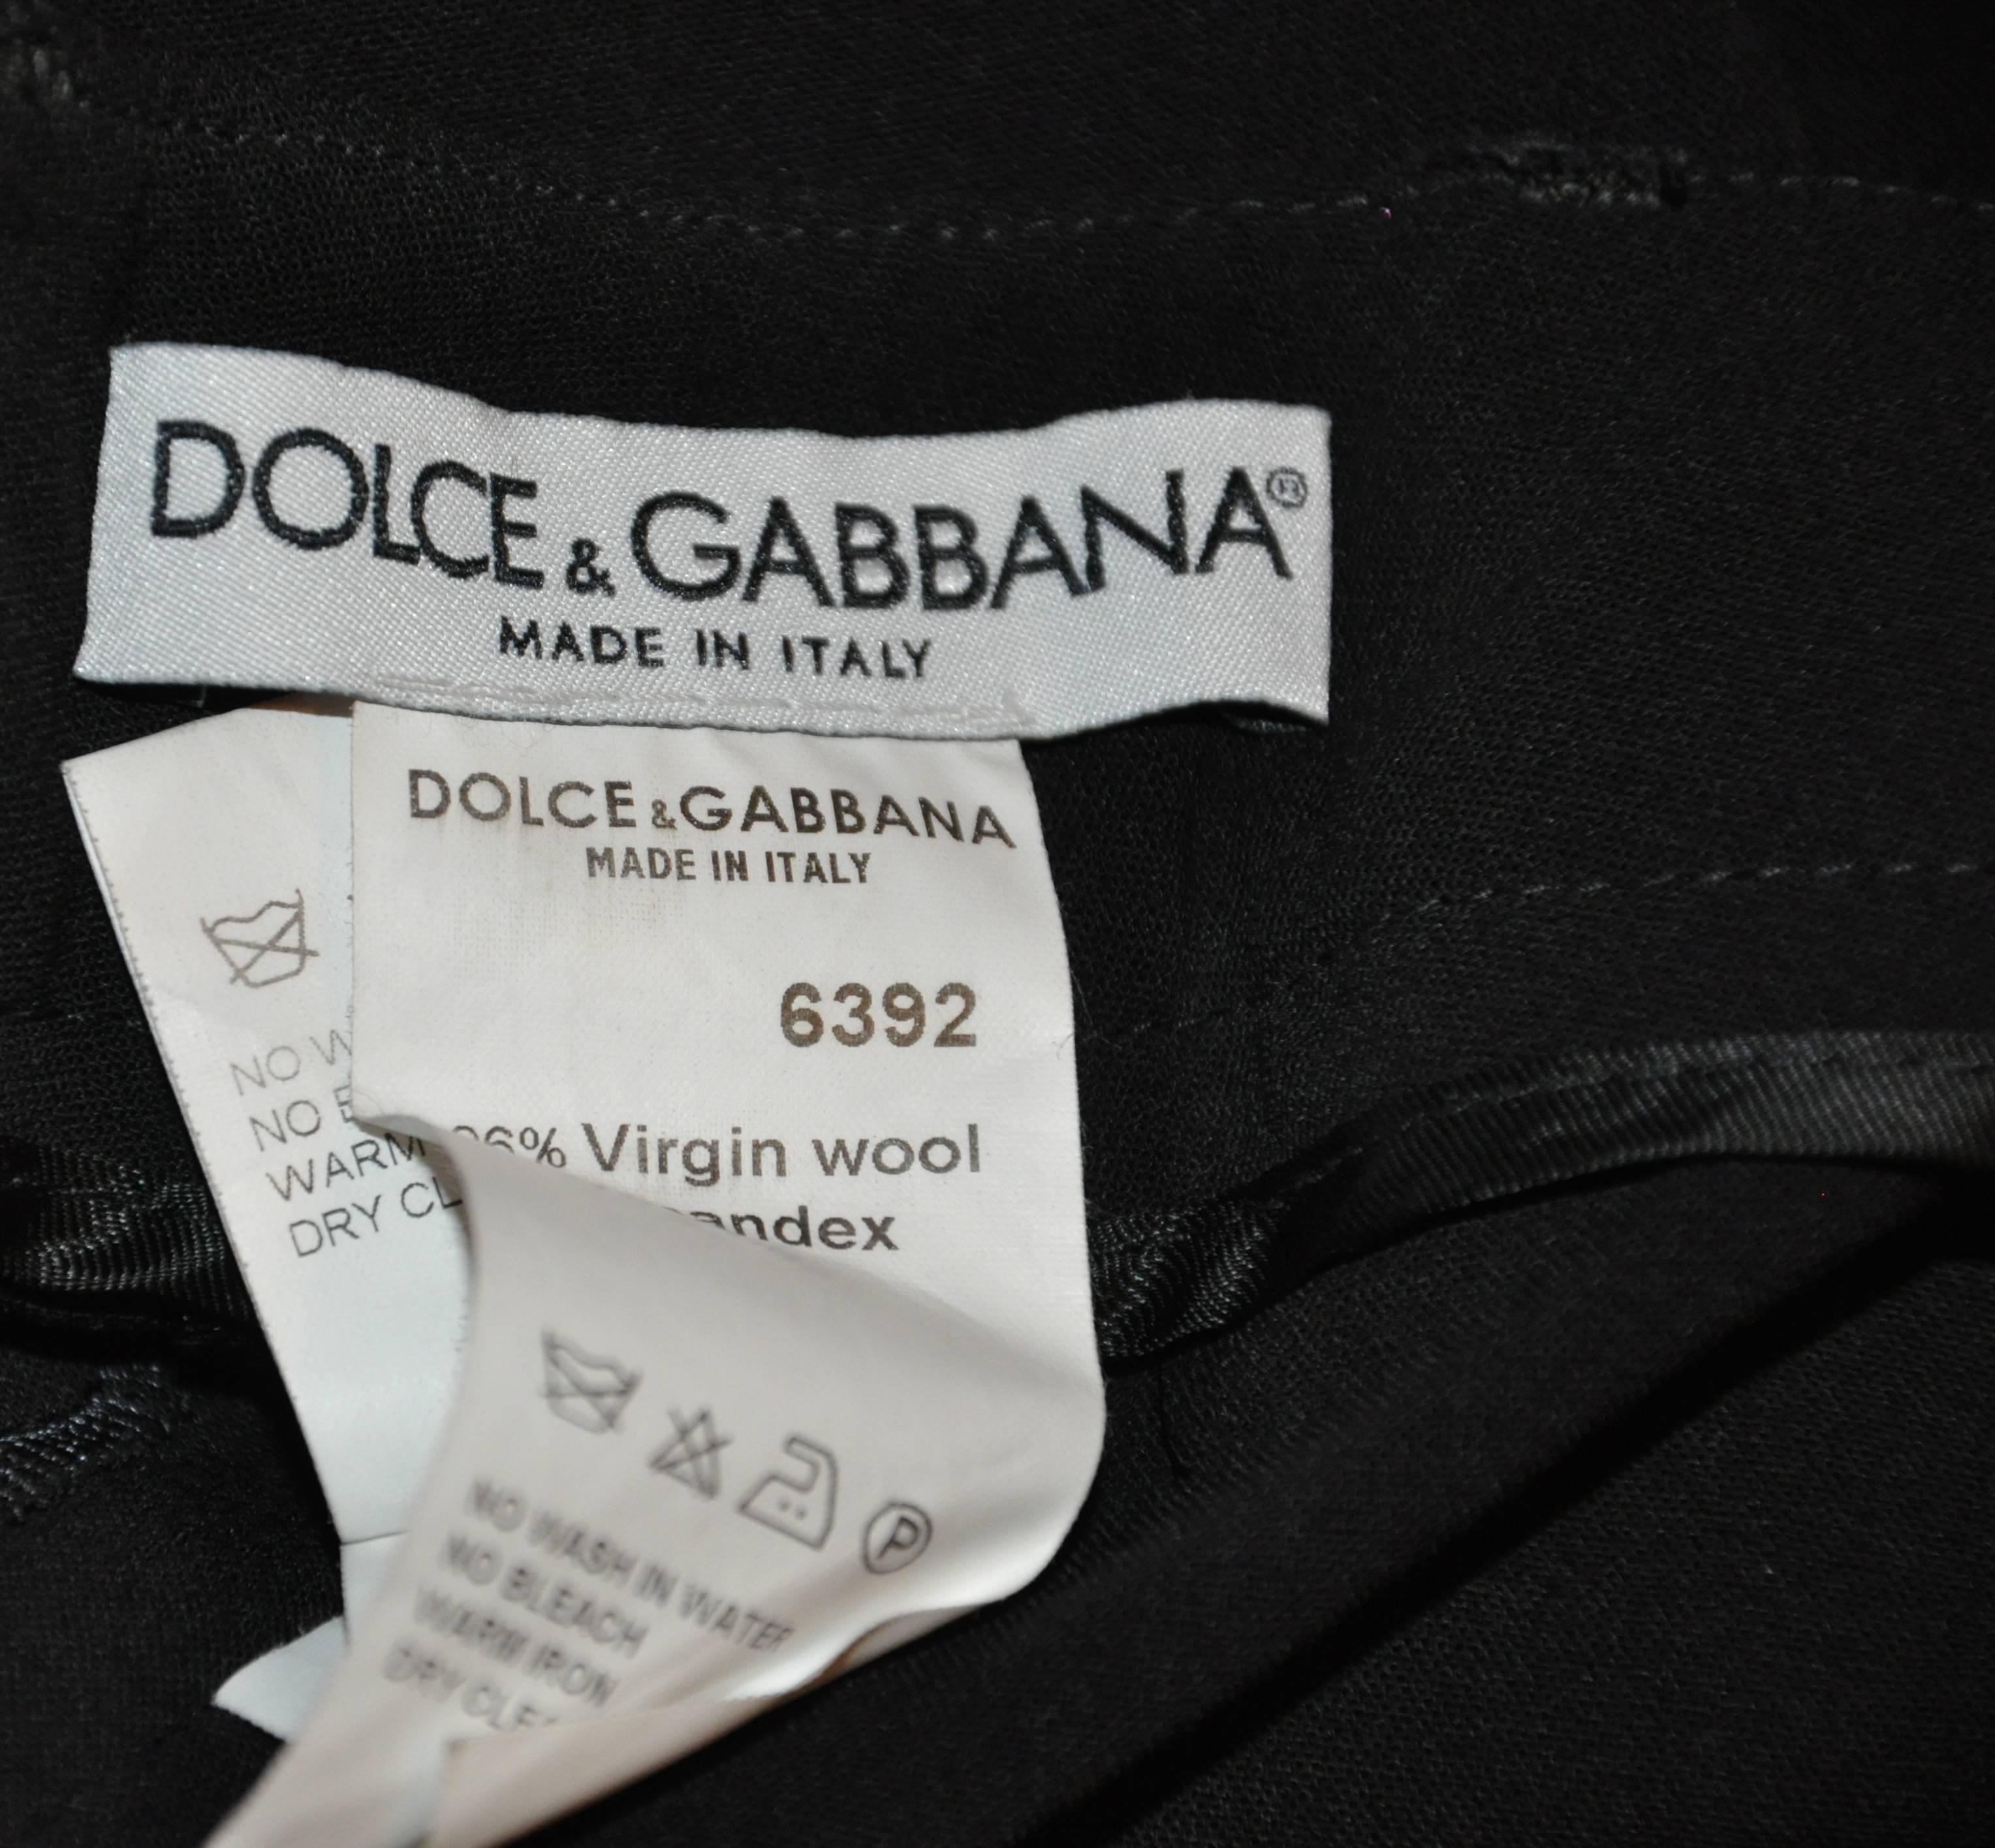           Le pantalon noir décontracté Dolce & Gabbana est agrémenté de finitions en forme de manchette sur les jambes. La taille mesure 29